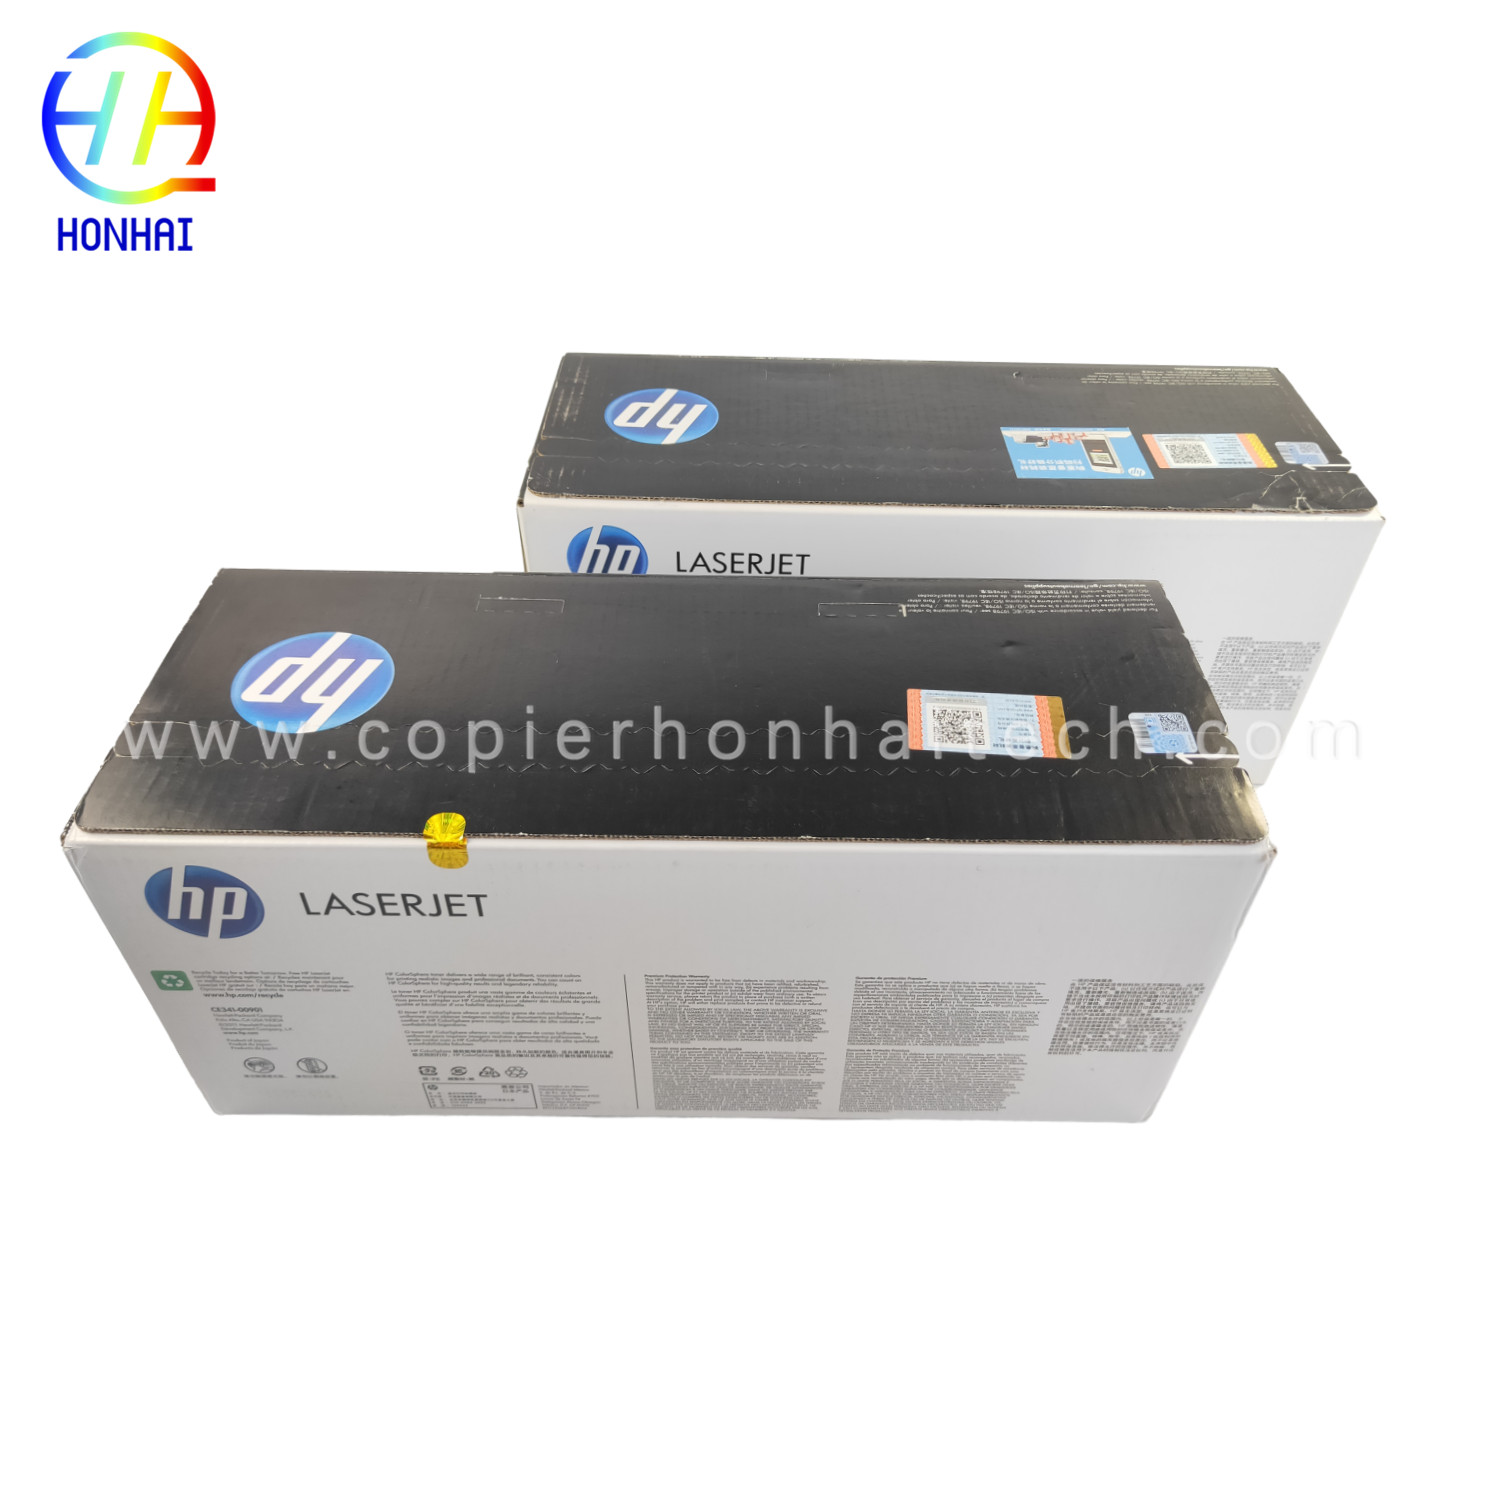 https://www.copierhonhaitech.com/origen-toner-cartridge-for-hp-laserjet-enterprise-700-color-mfp-m775-series-651a-ce341a-cyan-ce342ac- yellow-16000-page-product/